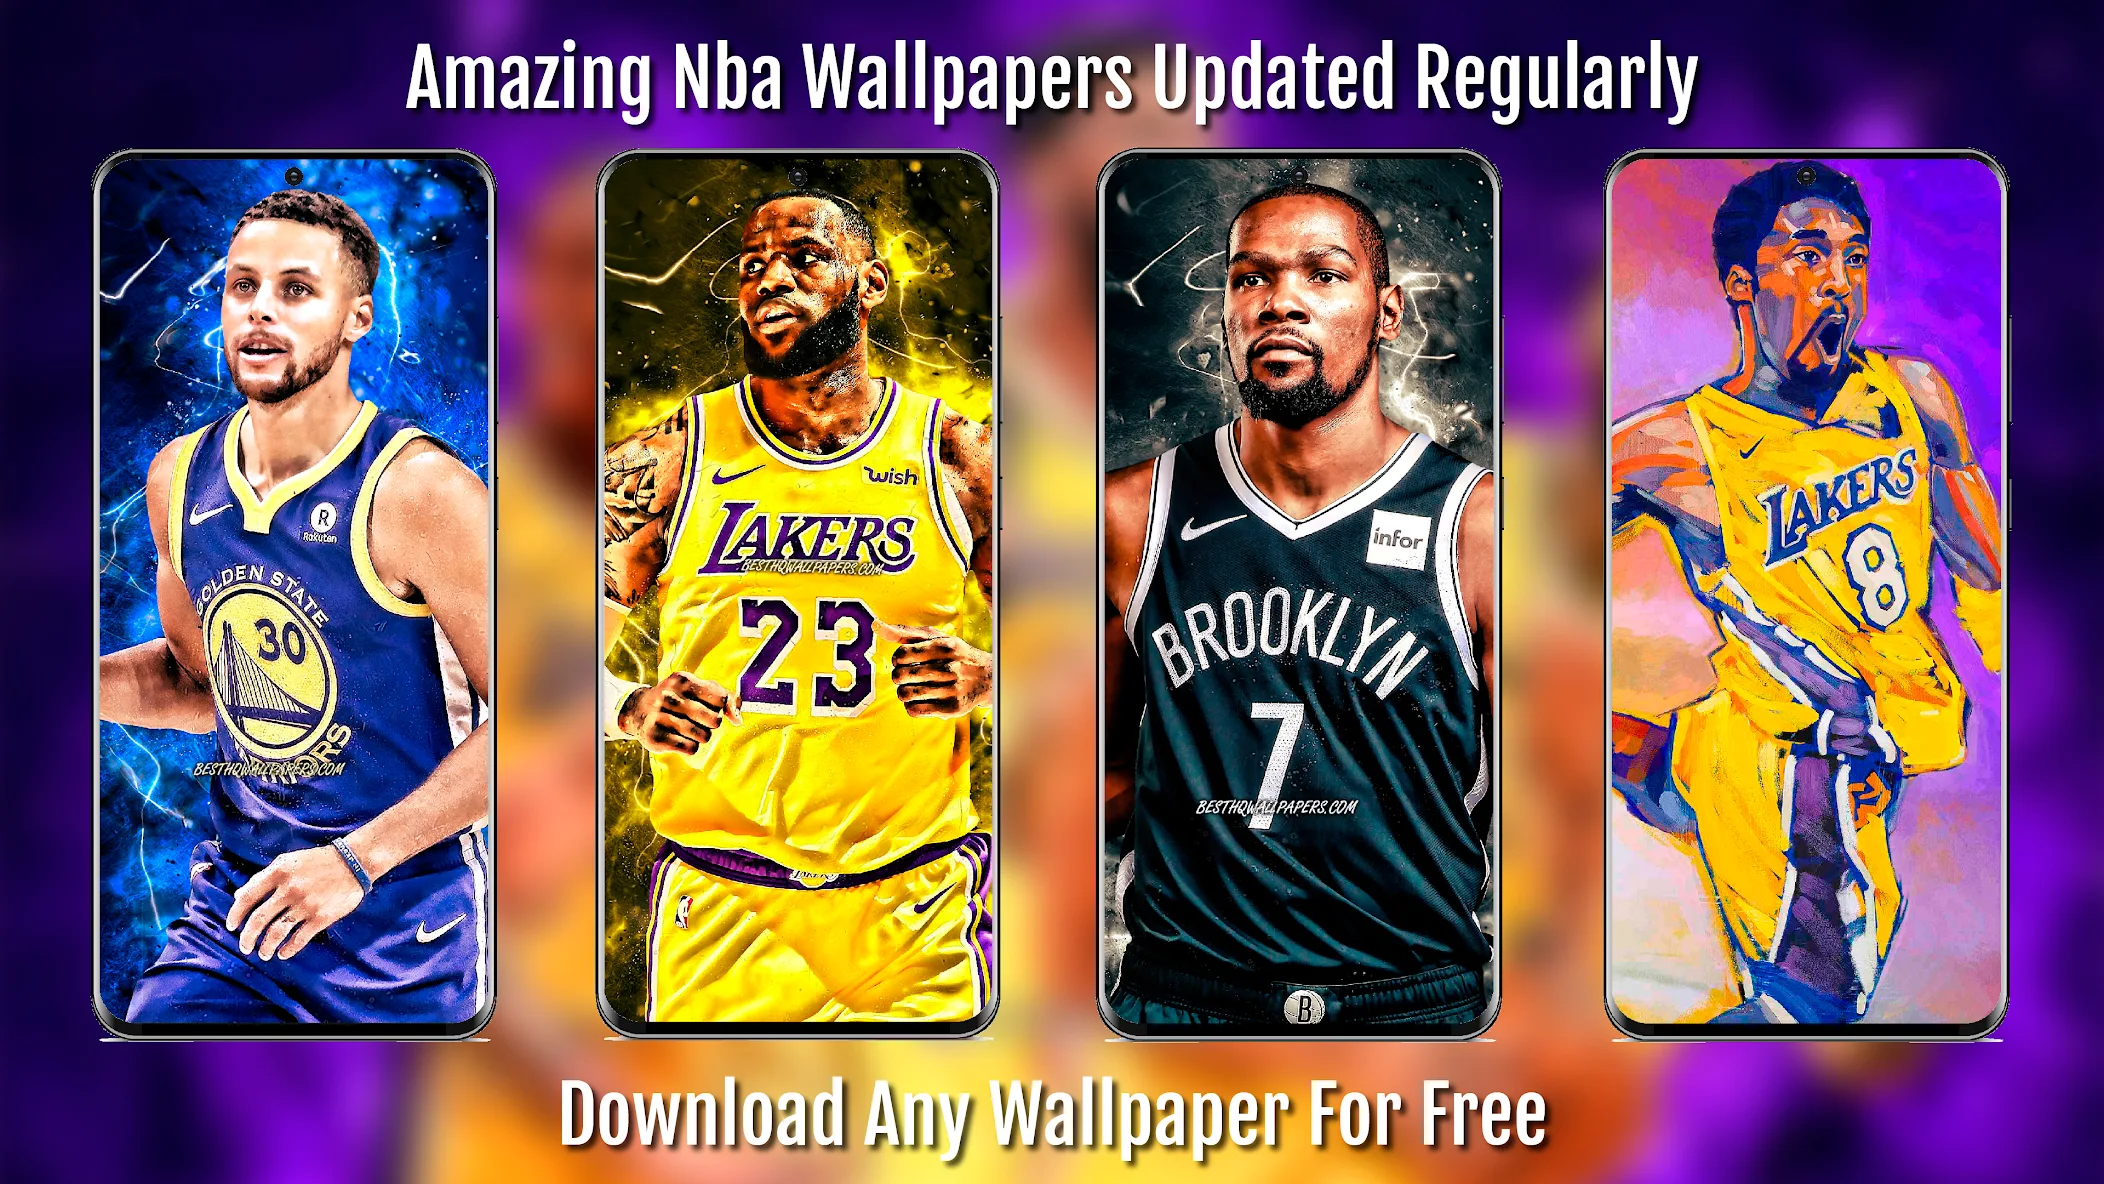 Wallpapers | NBA.com